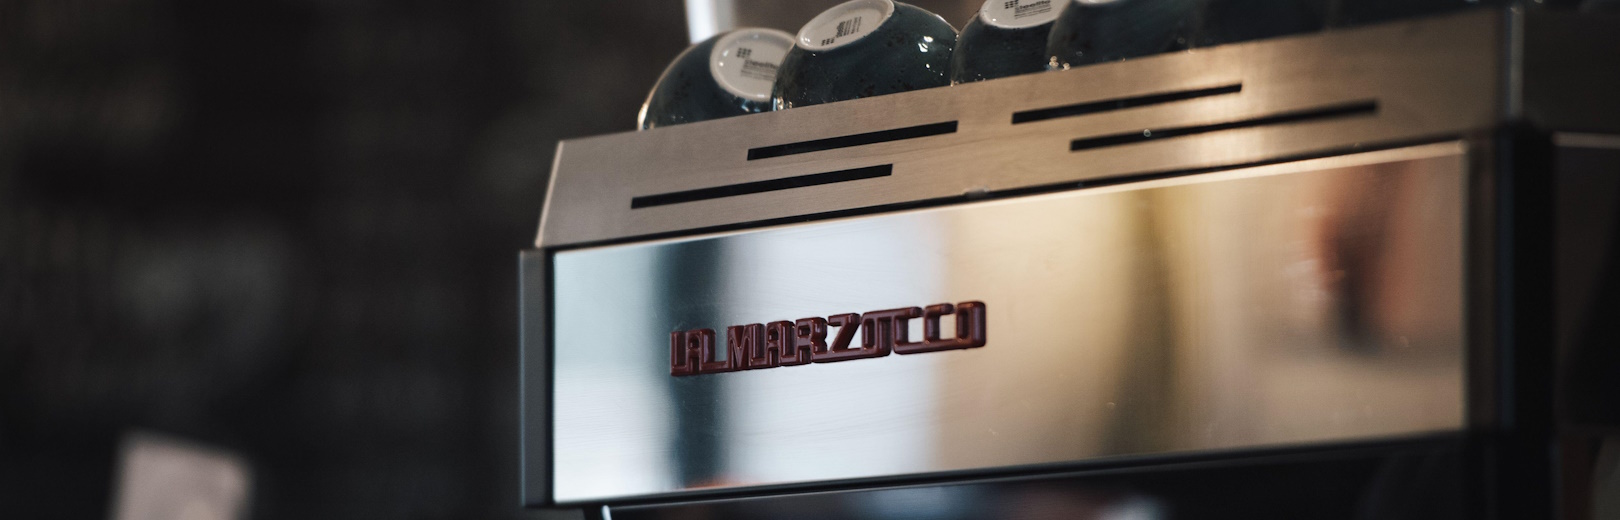 Silver La Marzocco machine in a café